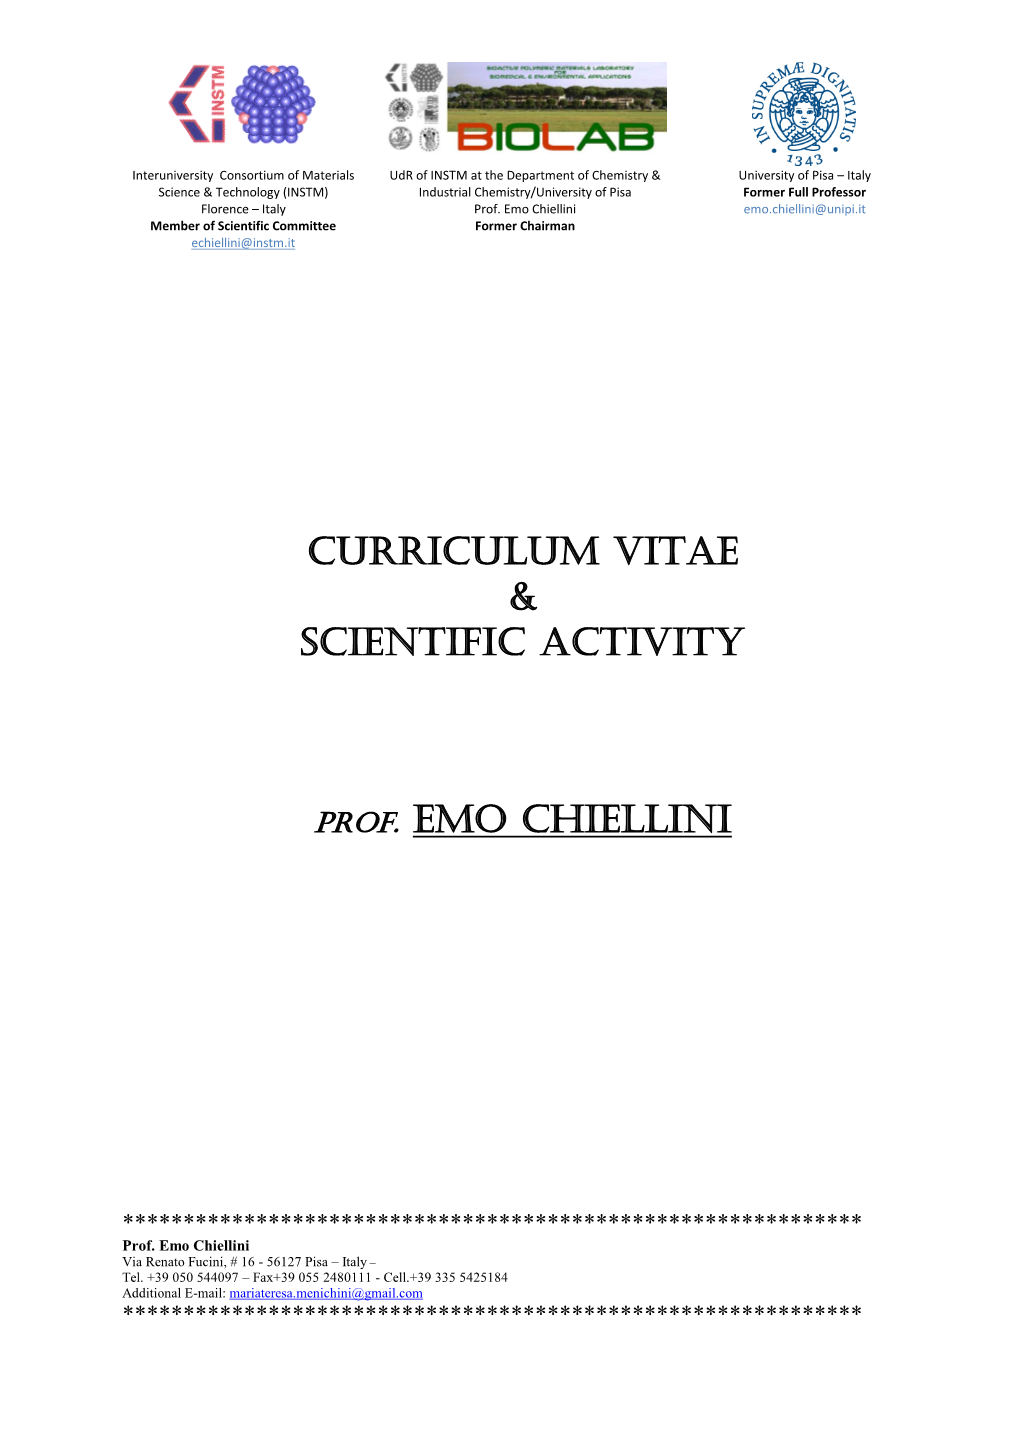 Curriculum Vitae & Scientific Activity